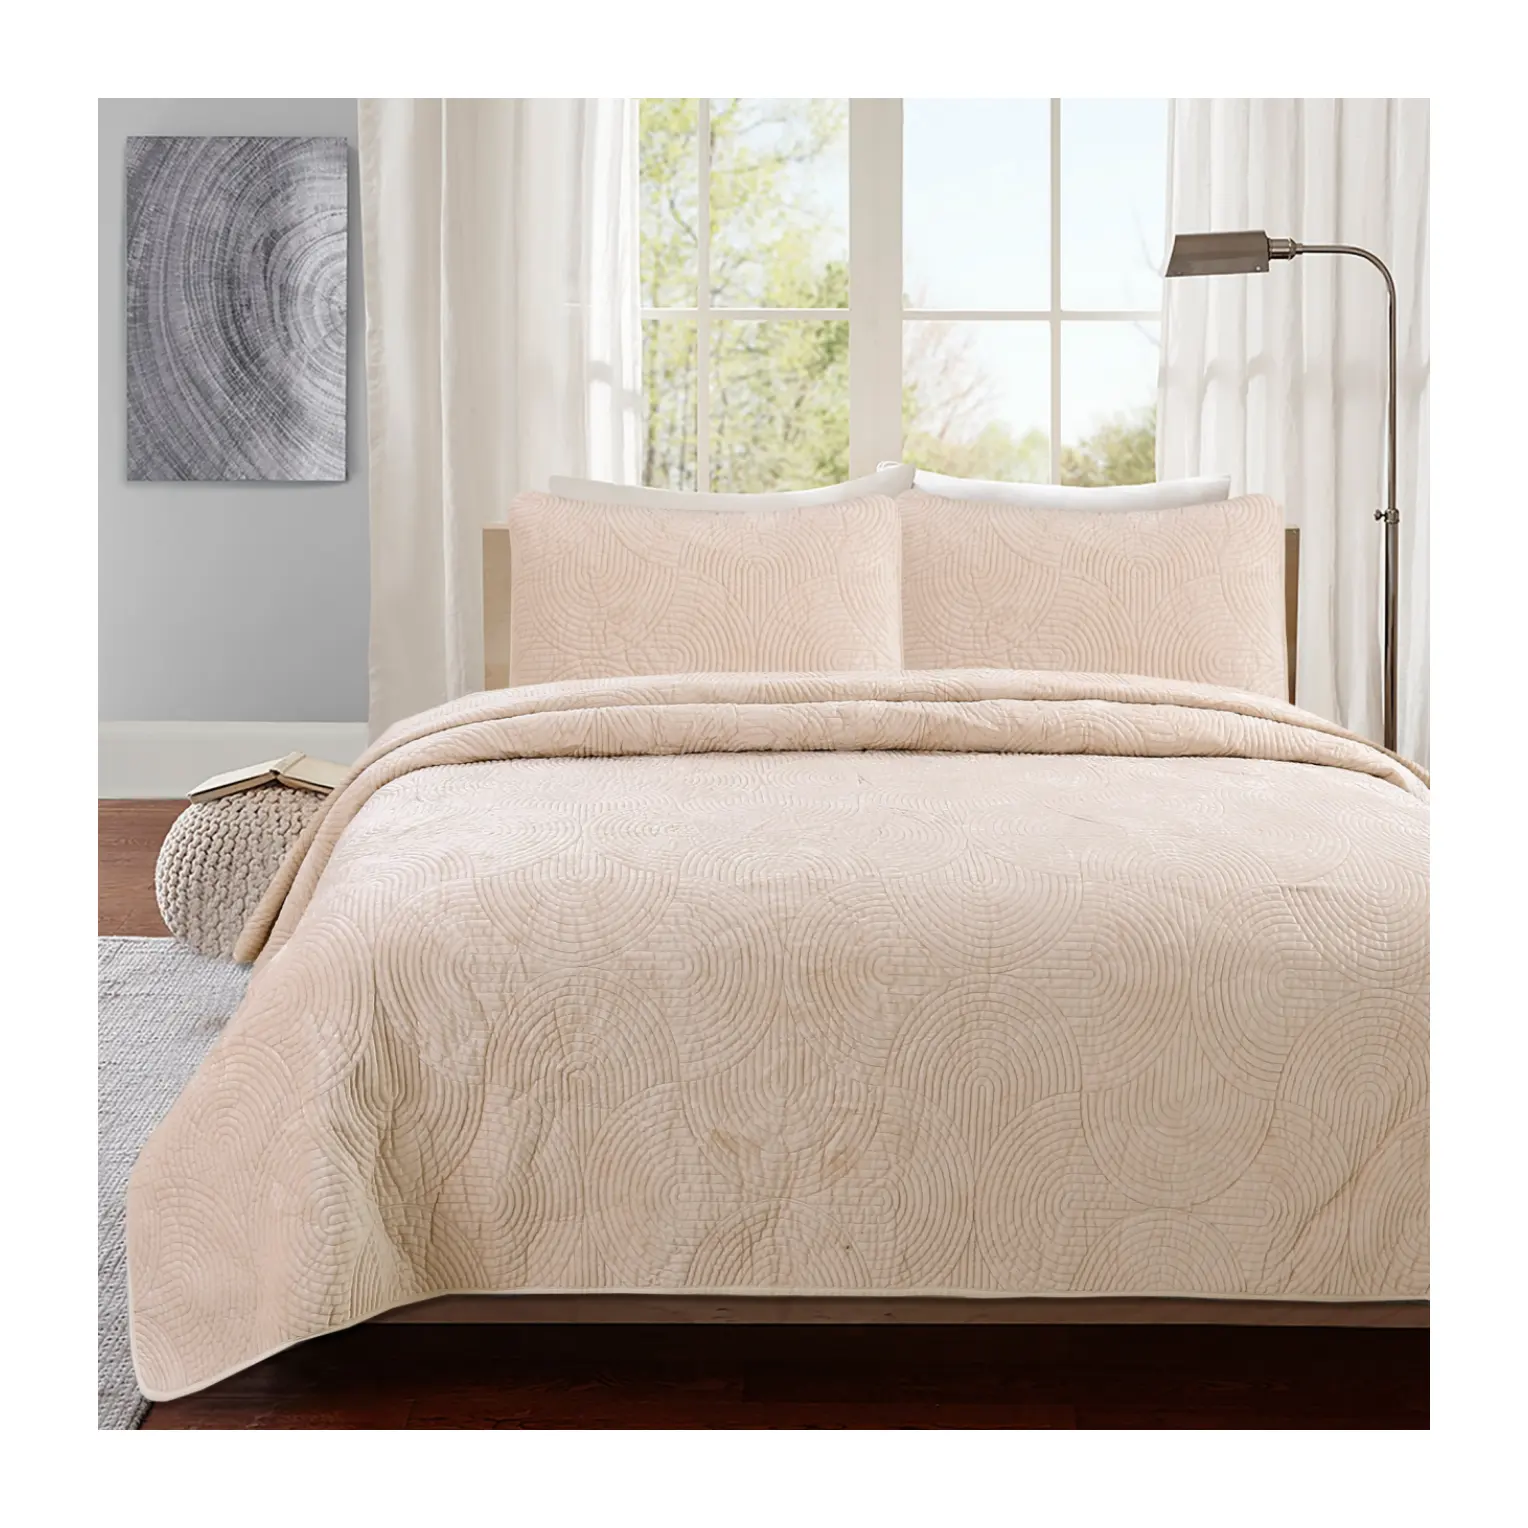 Precio de fábrica amarillo algodón suave Reversible edredón cubierta sábanas ropa de cama juegos de cobertor para adultos